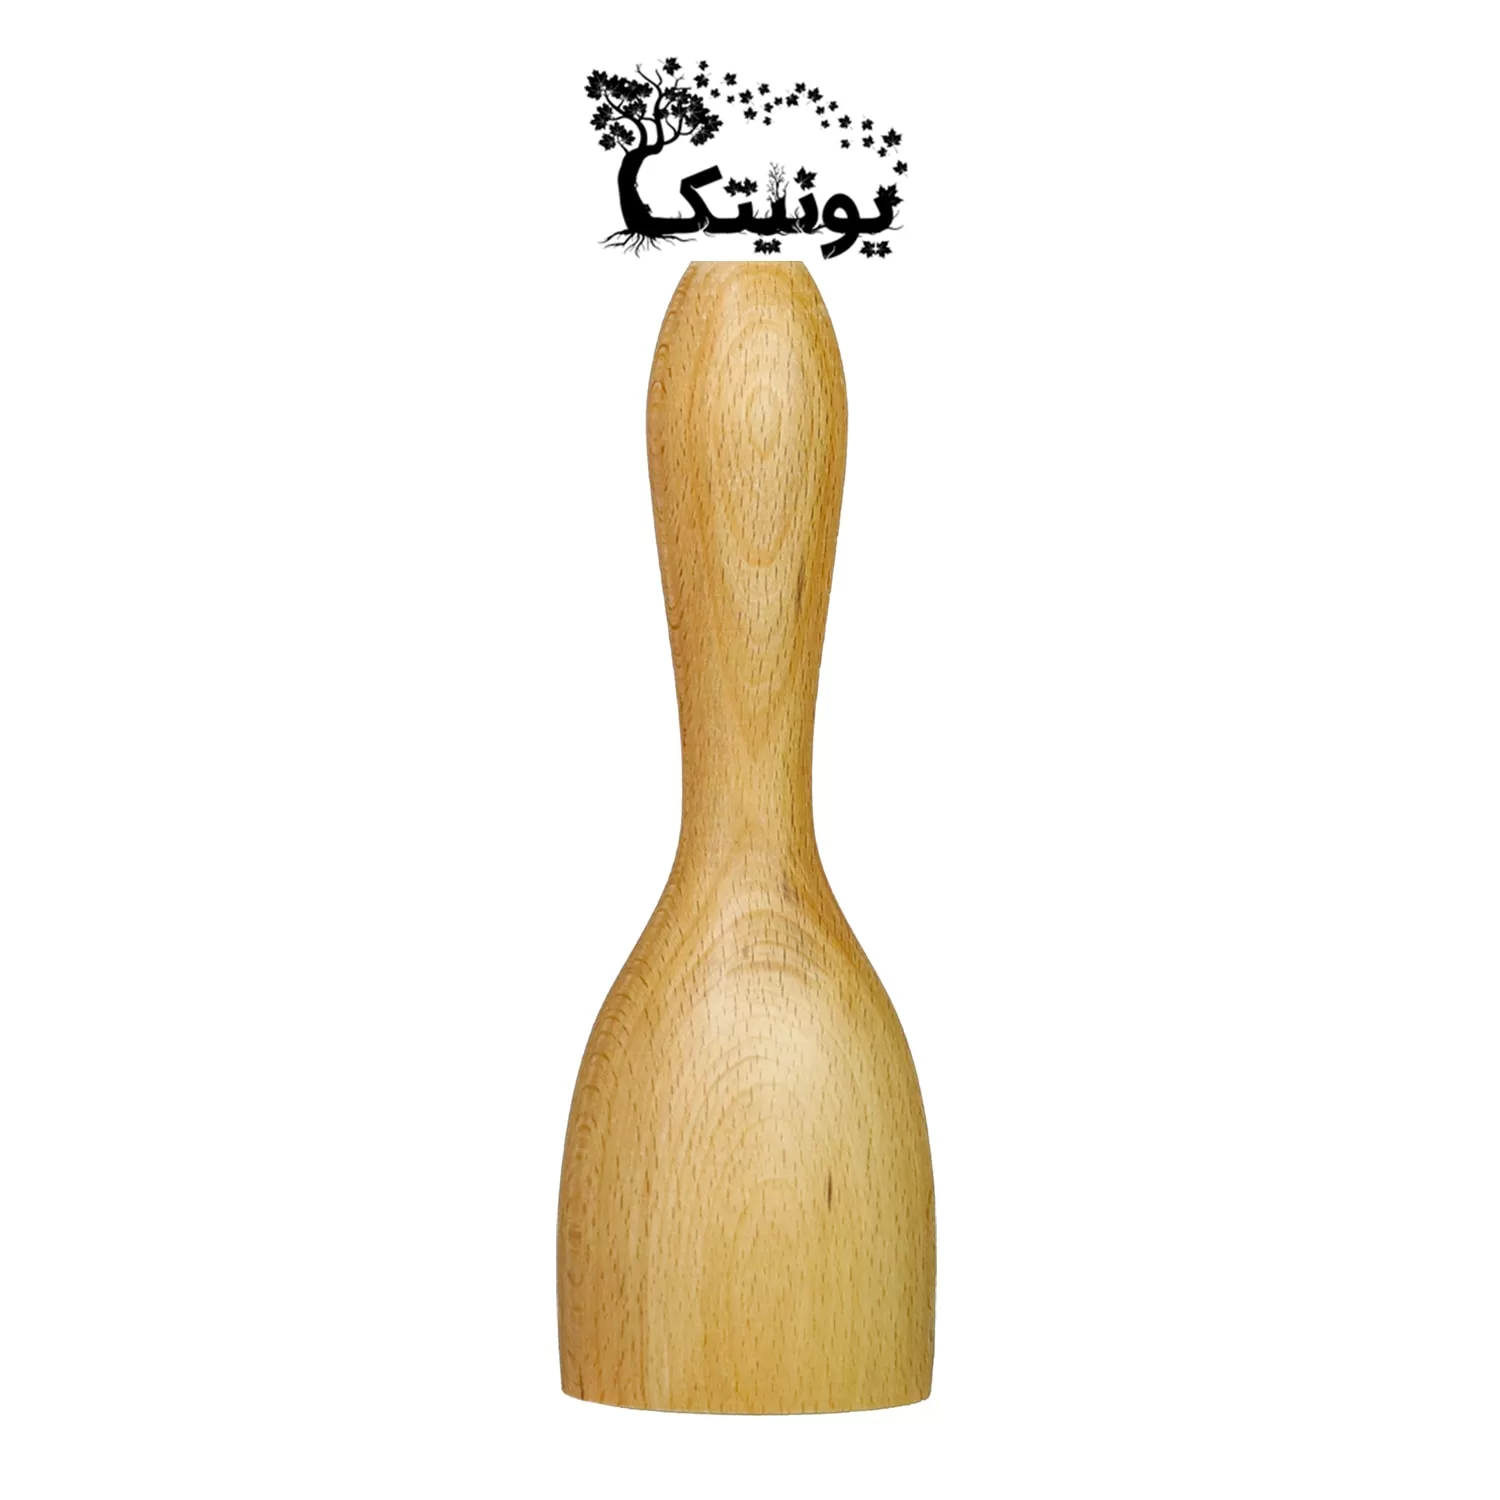 گوشت کوب چوبی یونیتک مدل یکپارچه کد 73 زیبا و با کیفیت است.